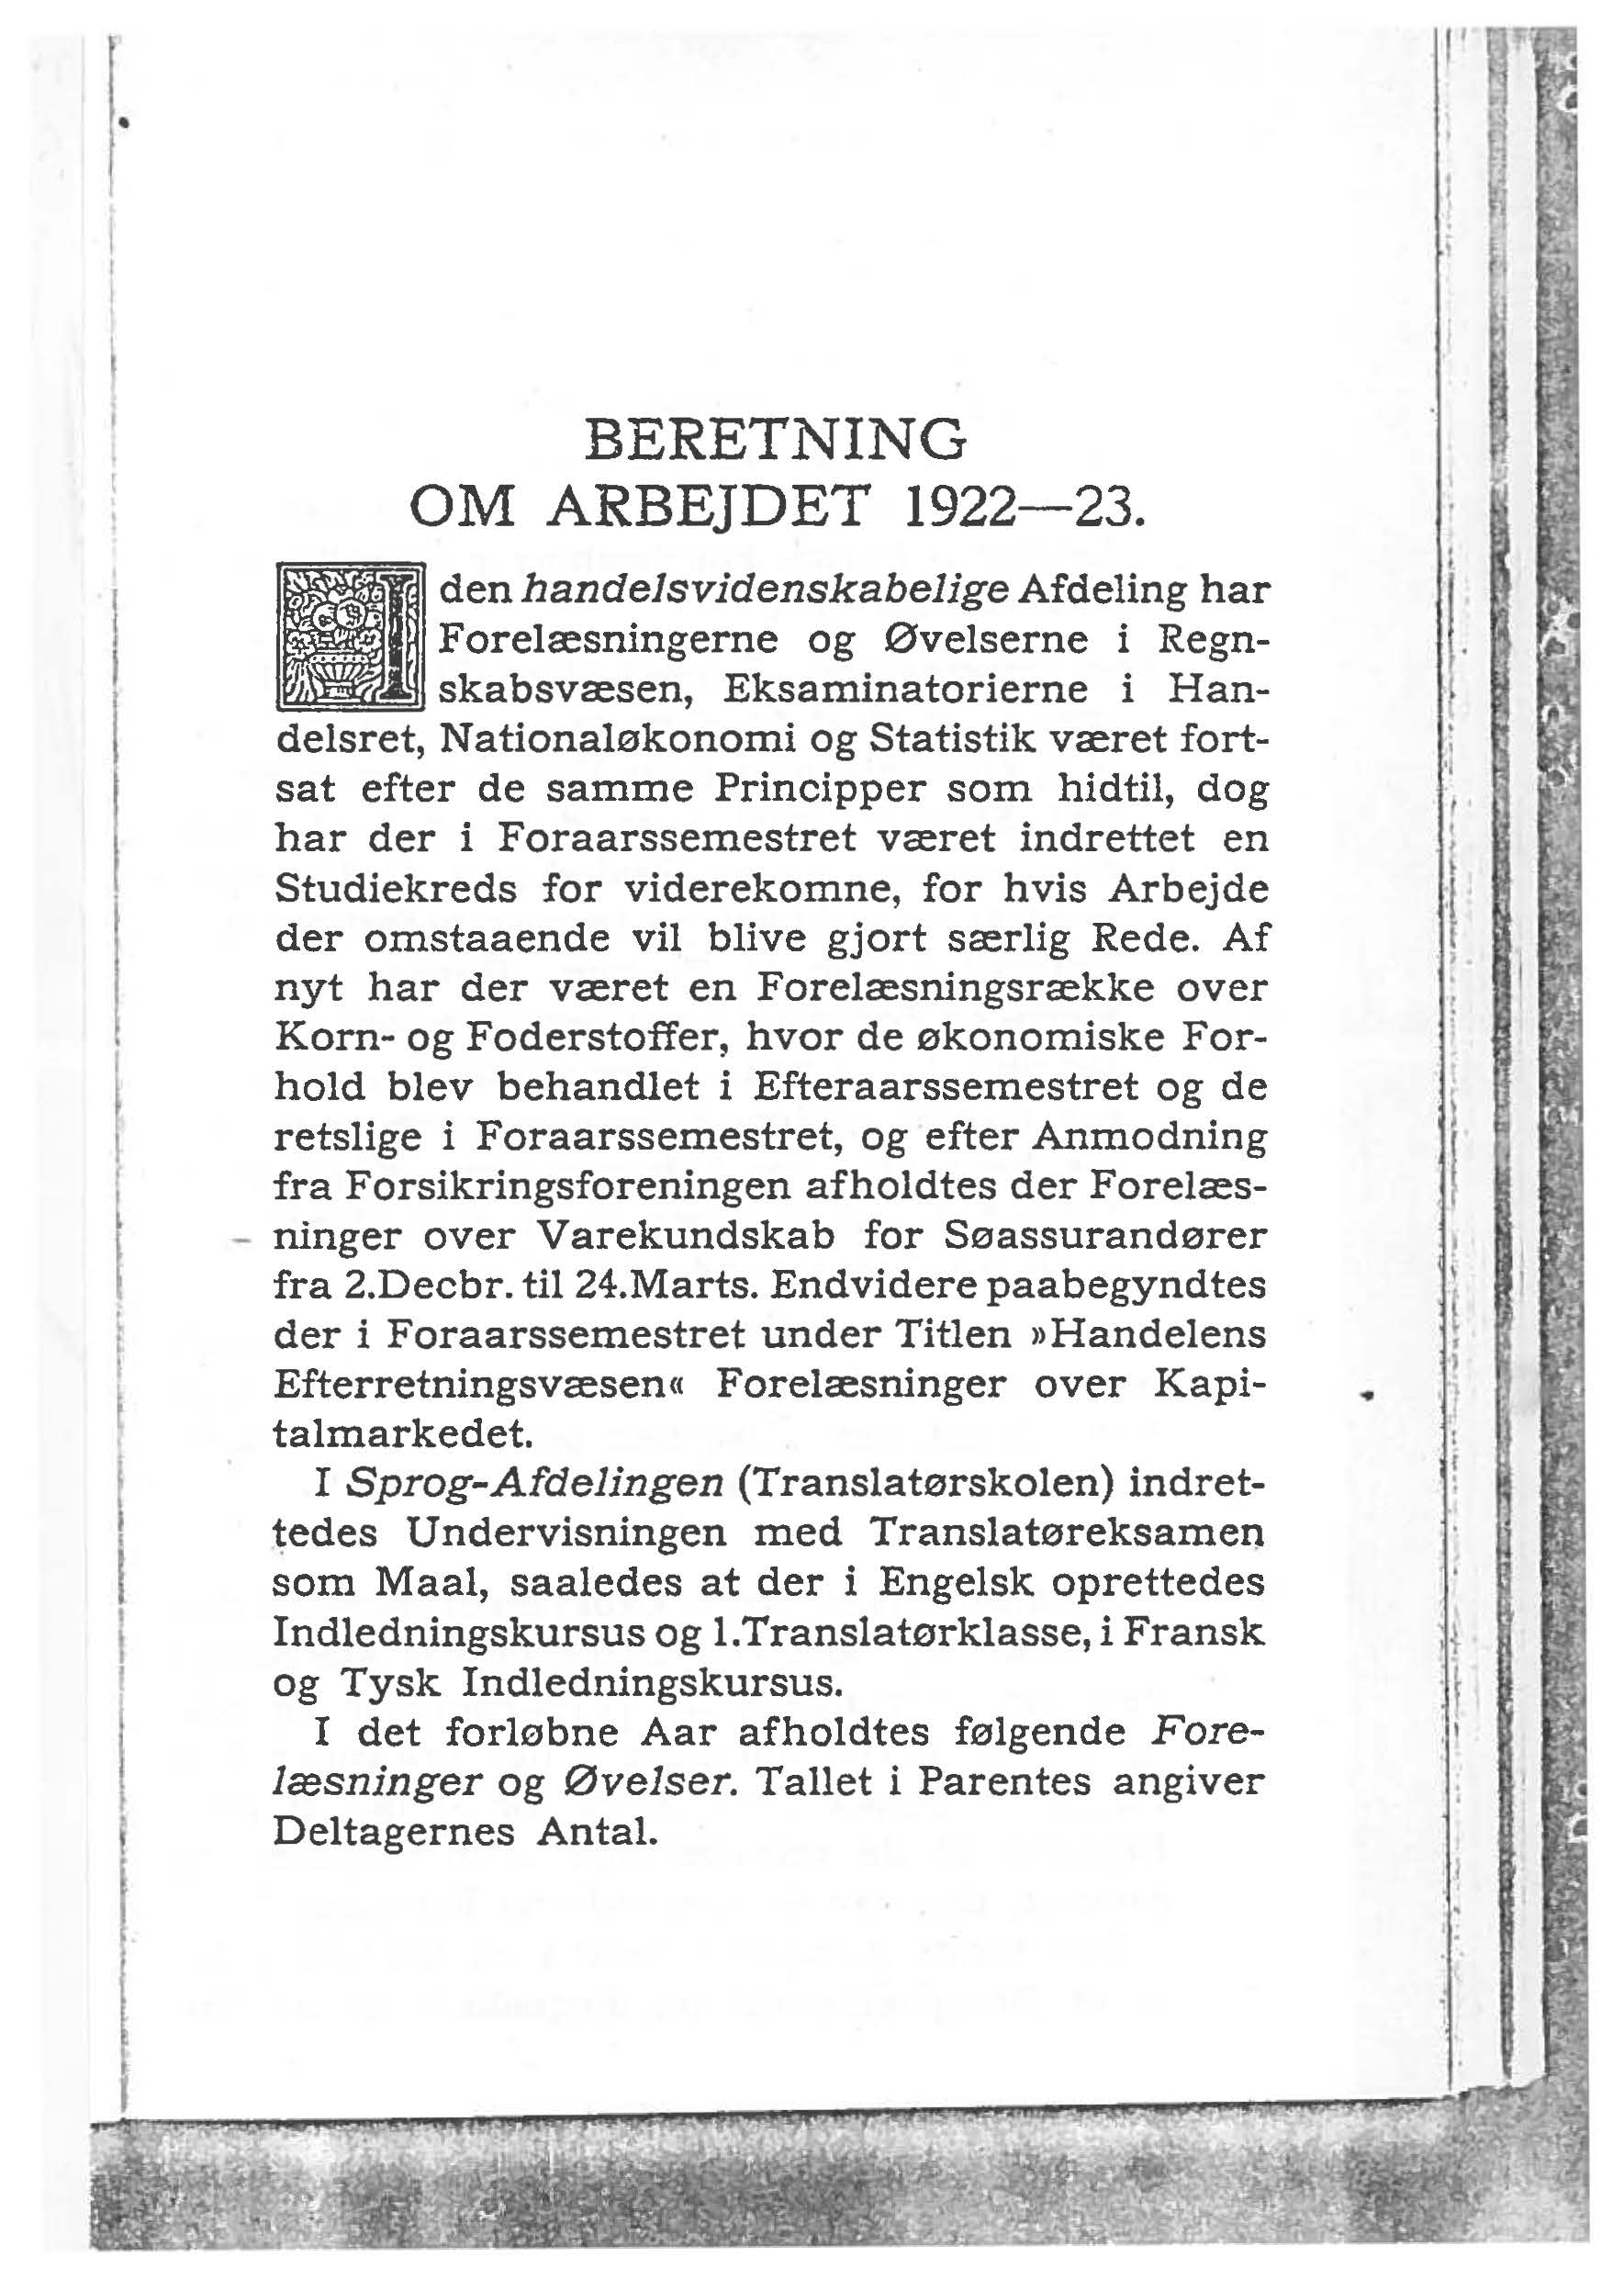 ' BERETNNG OM ARBEJDET 1922-23.